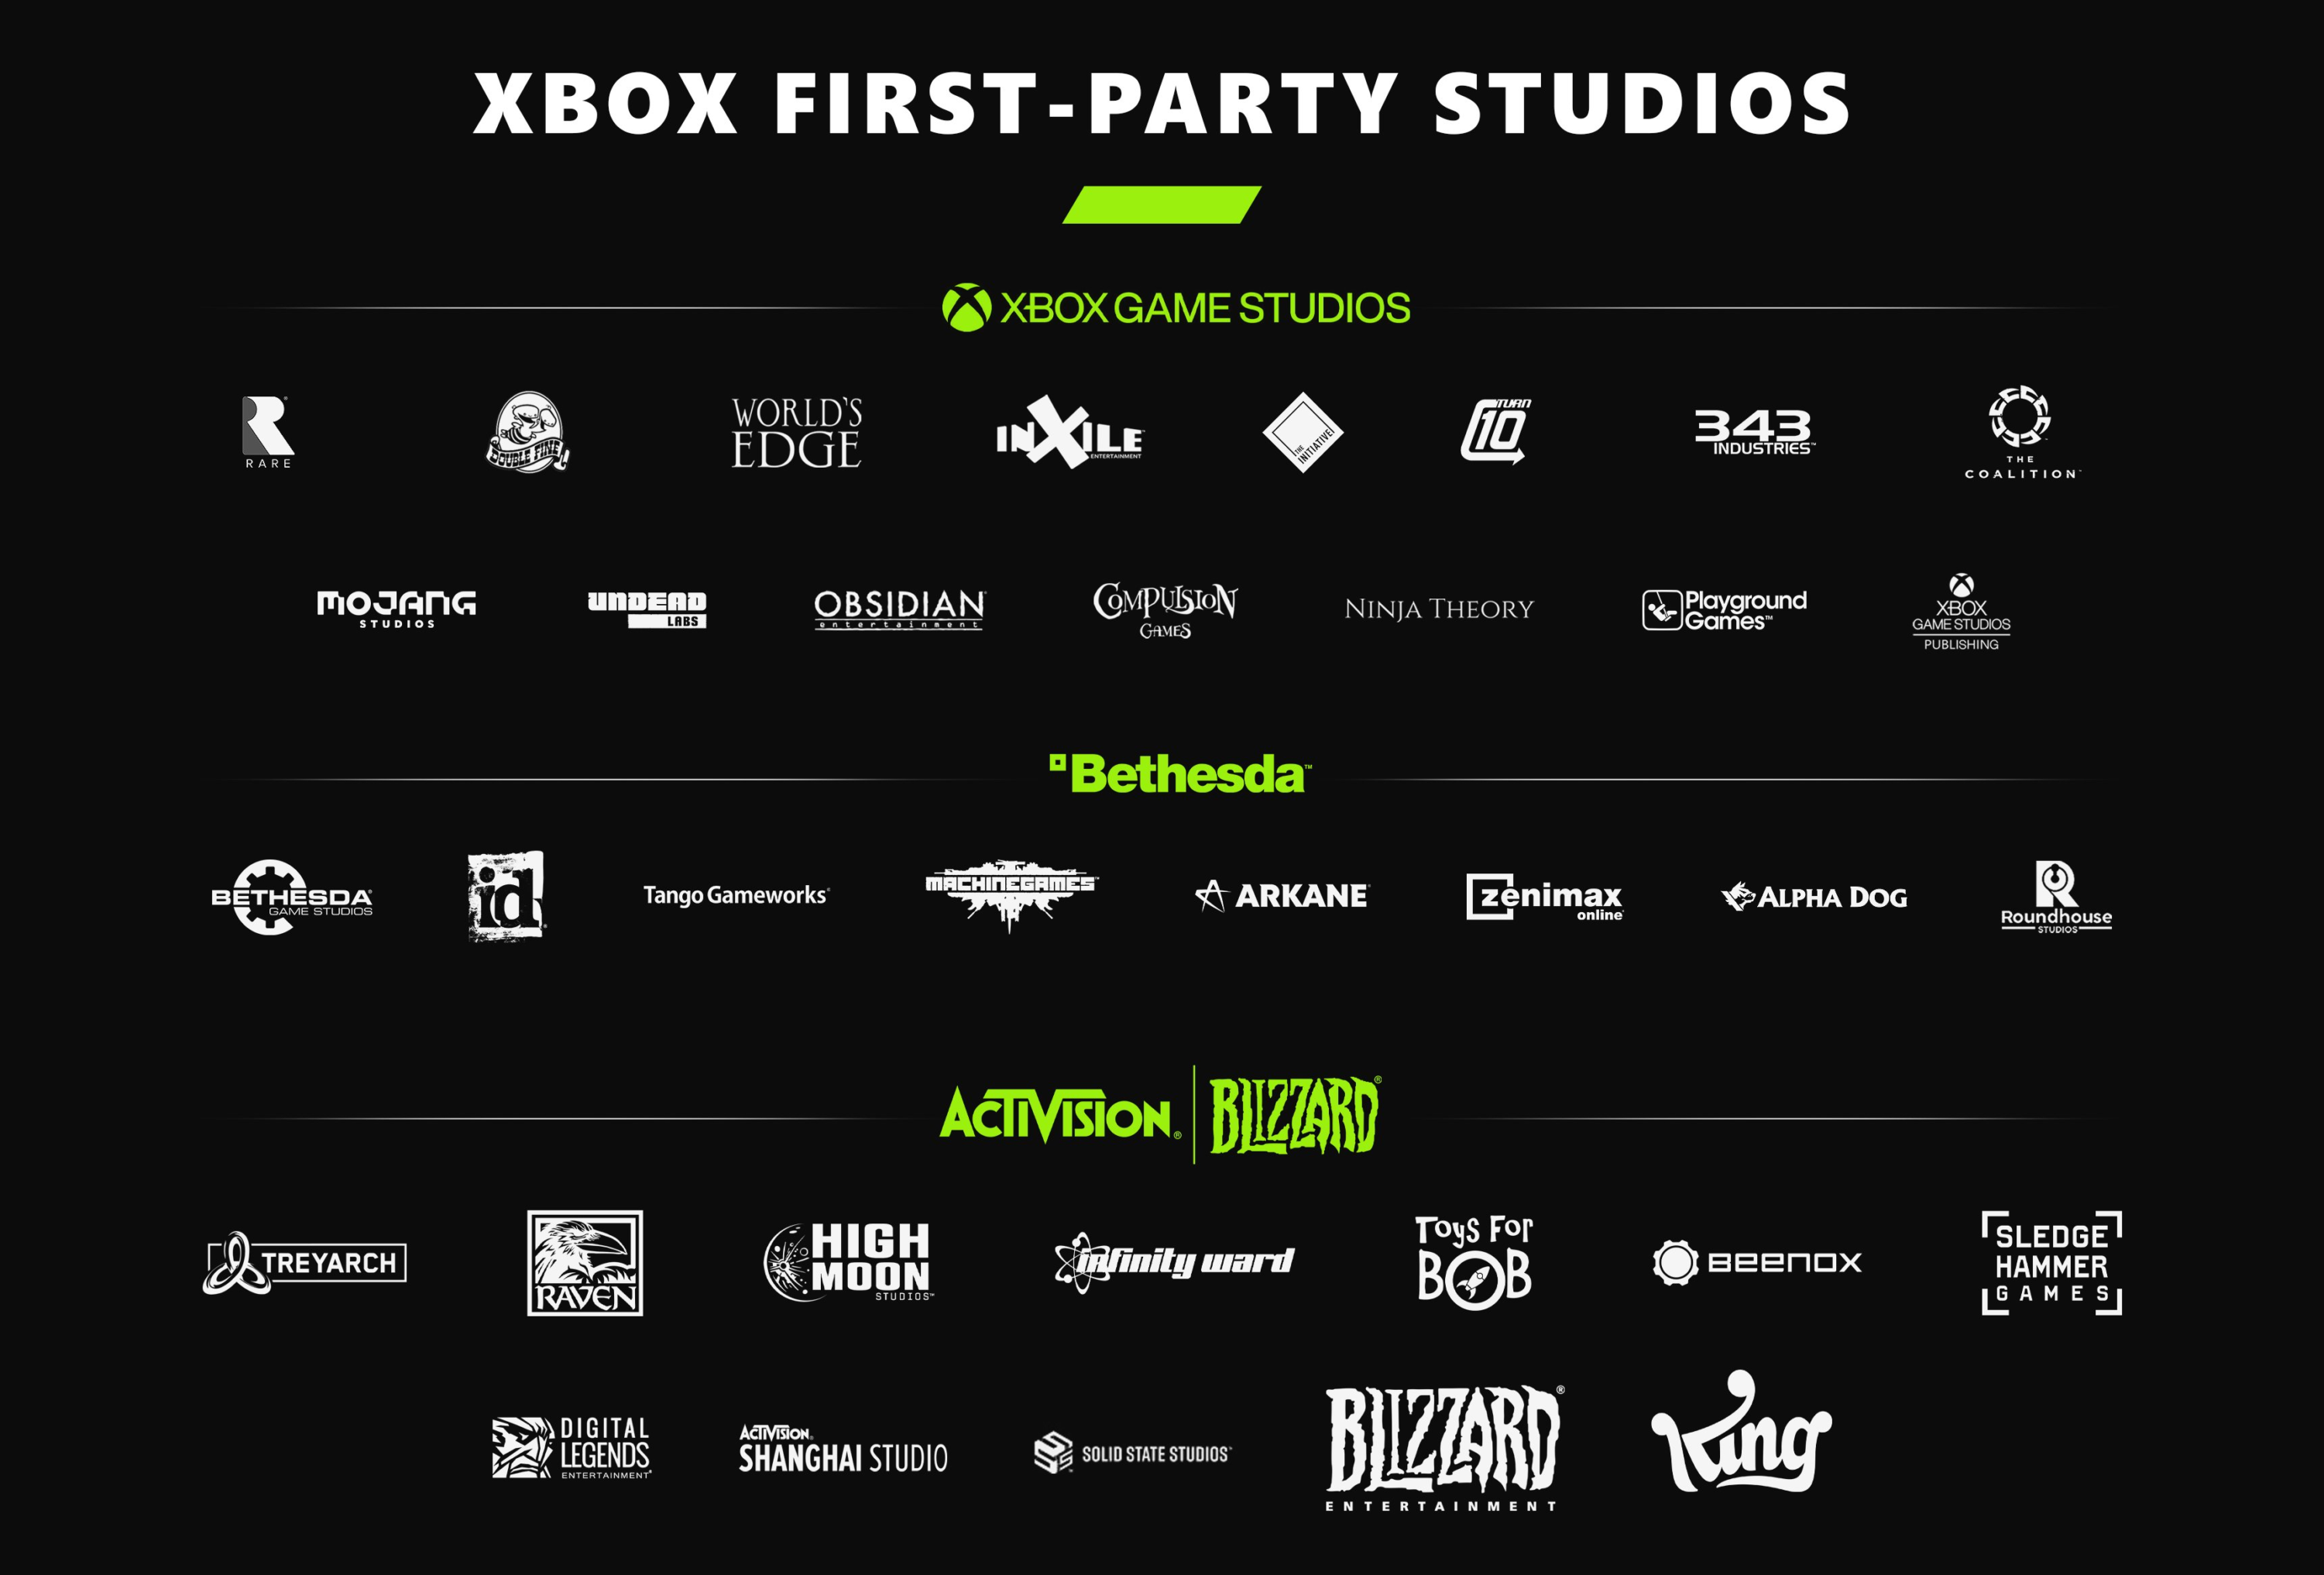 Quais seriam os projetos em produção na Xbox Game Studios? Vamos